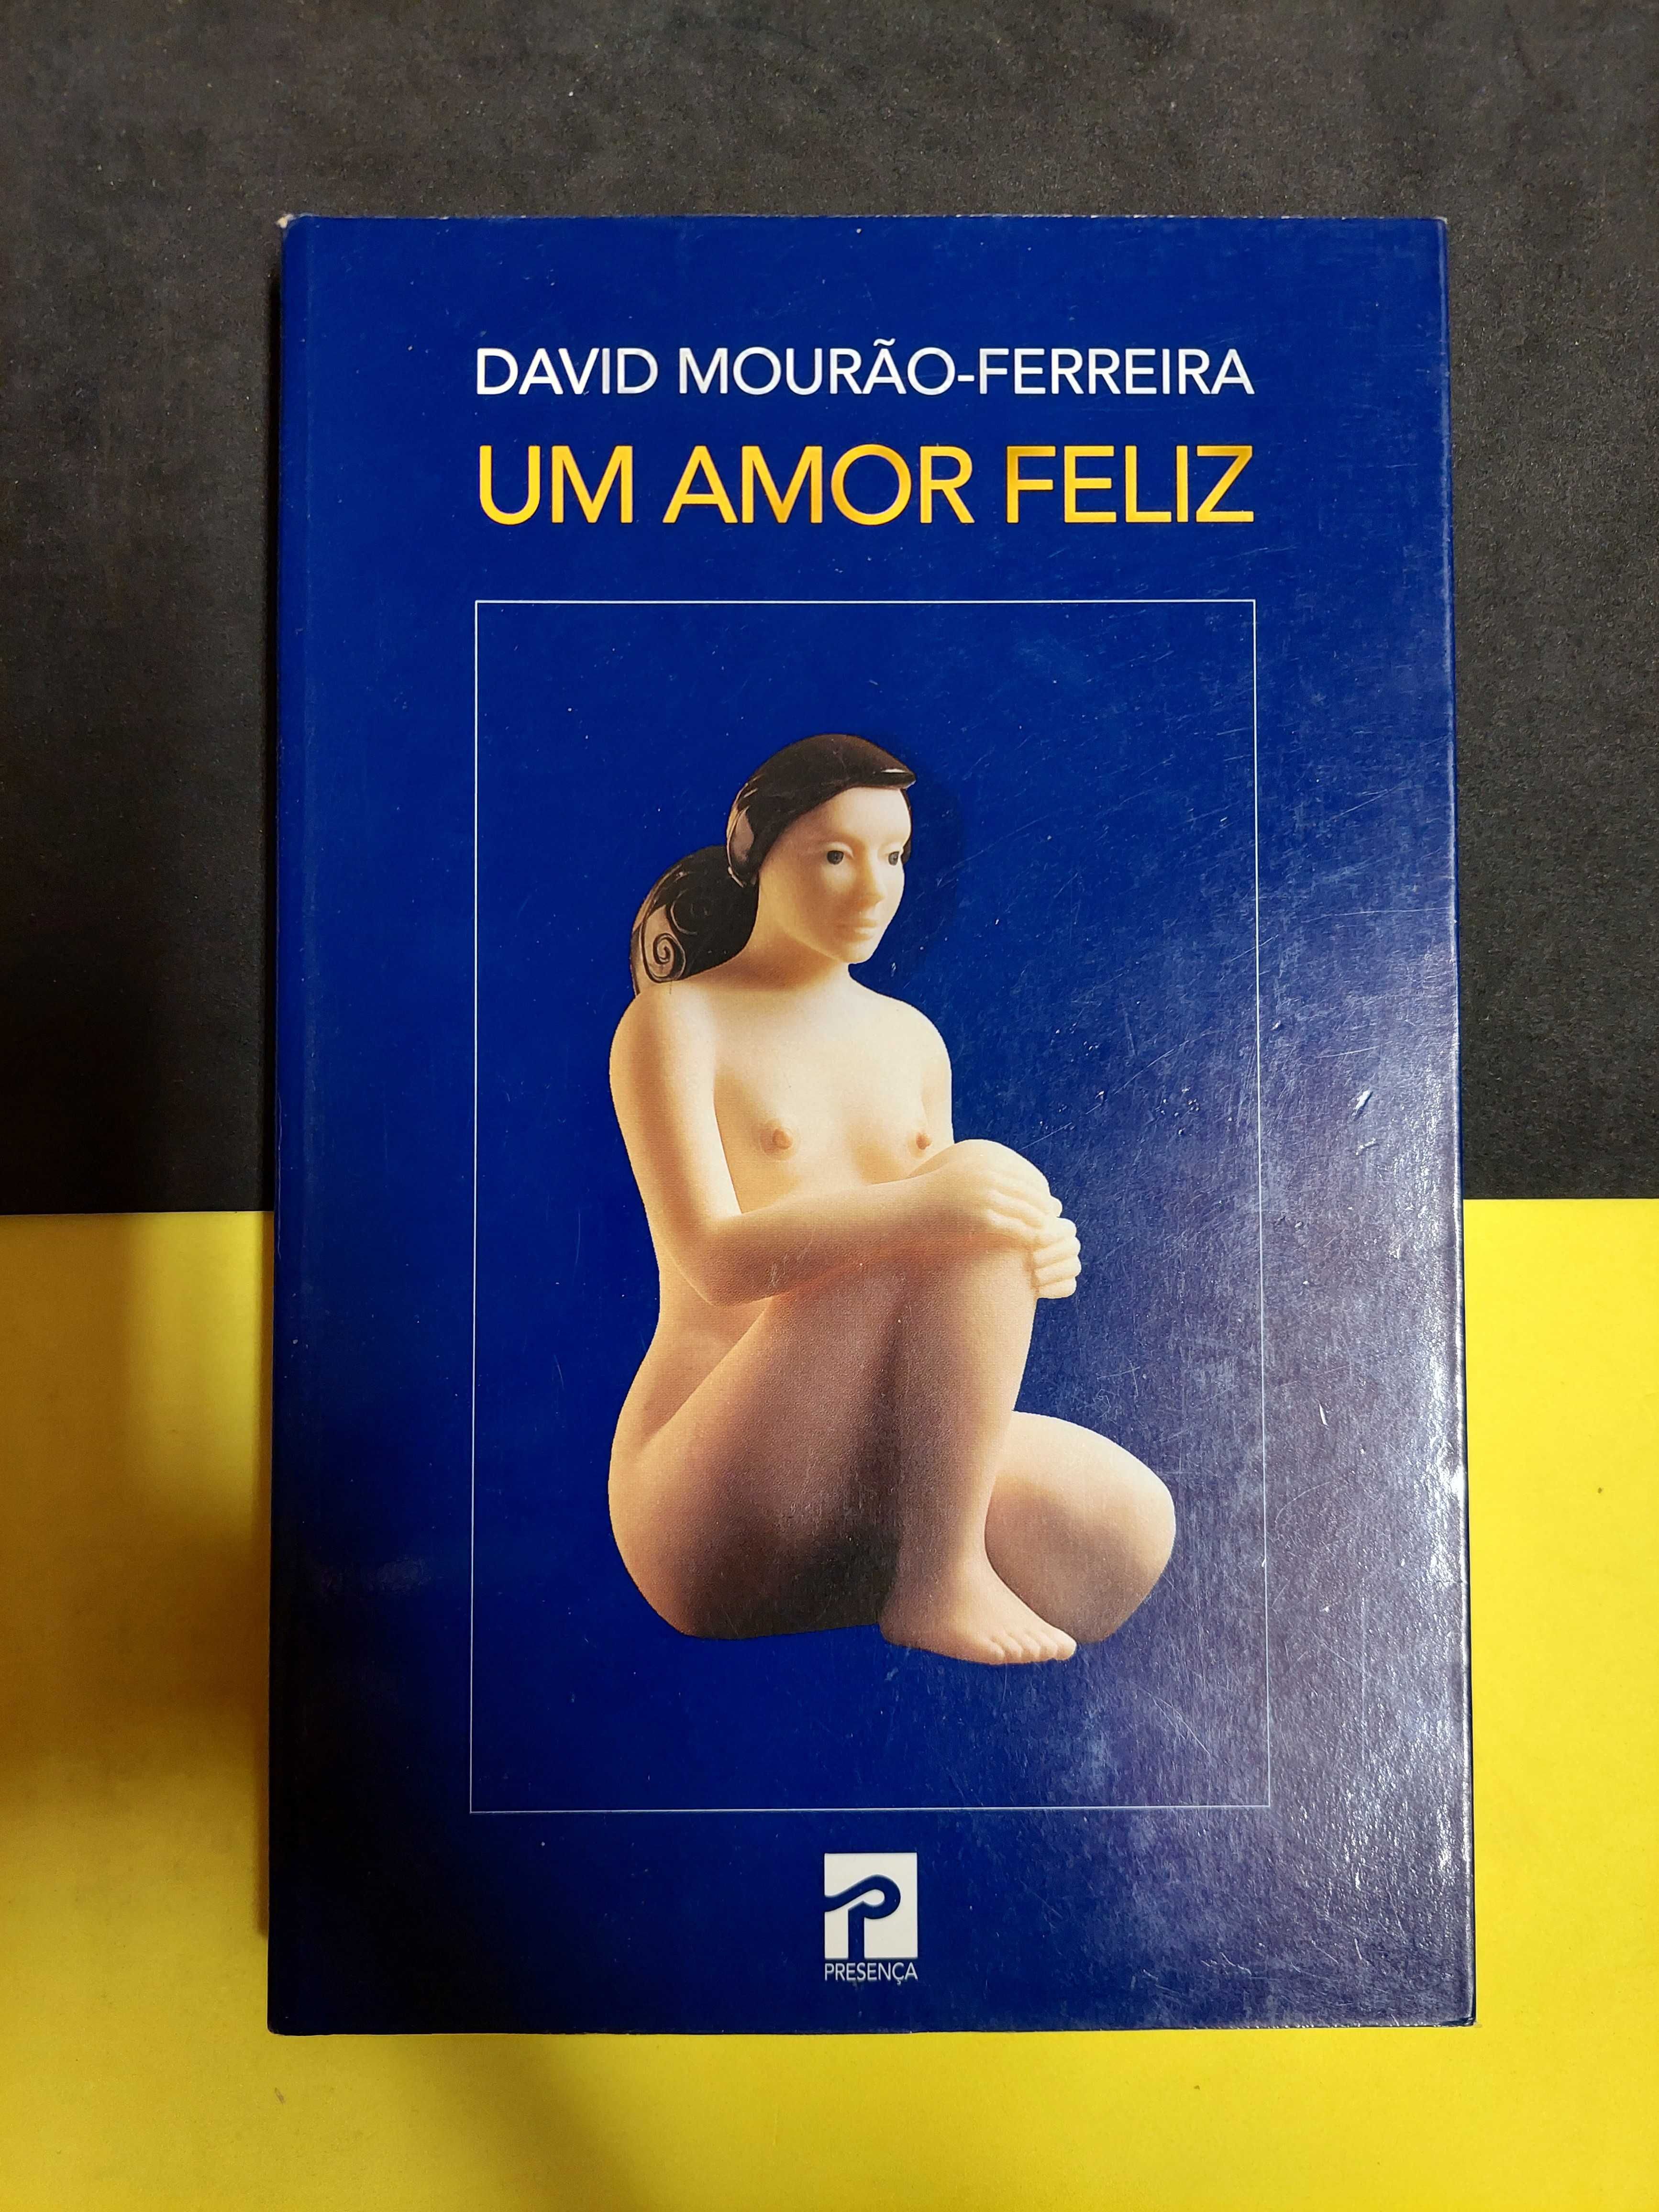 David Mourão-Ferreira - Um Amor Feliz